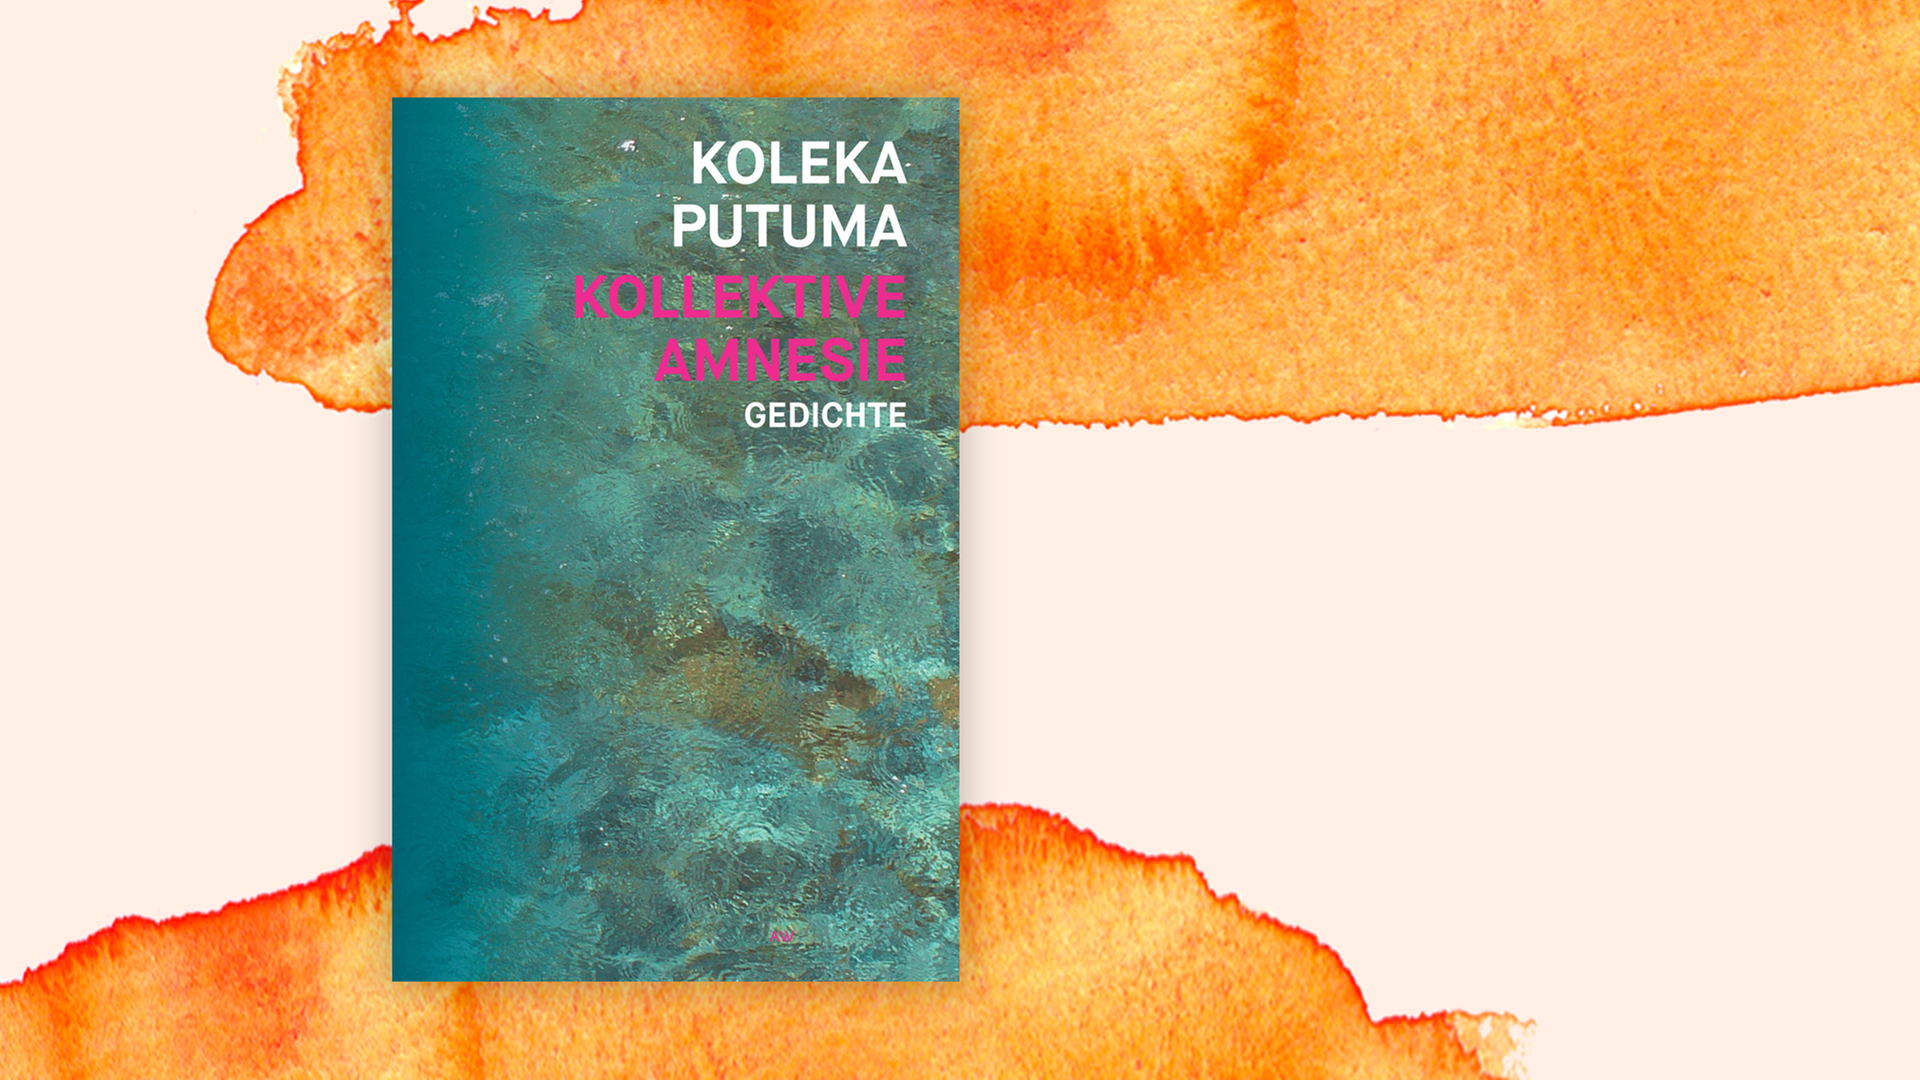 Zu sehen ist das Cover des Buches "Kollektive Amnesie" der Dichterin Koleka Putuma.